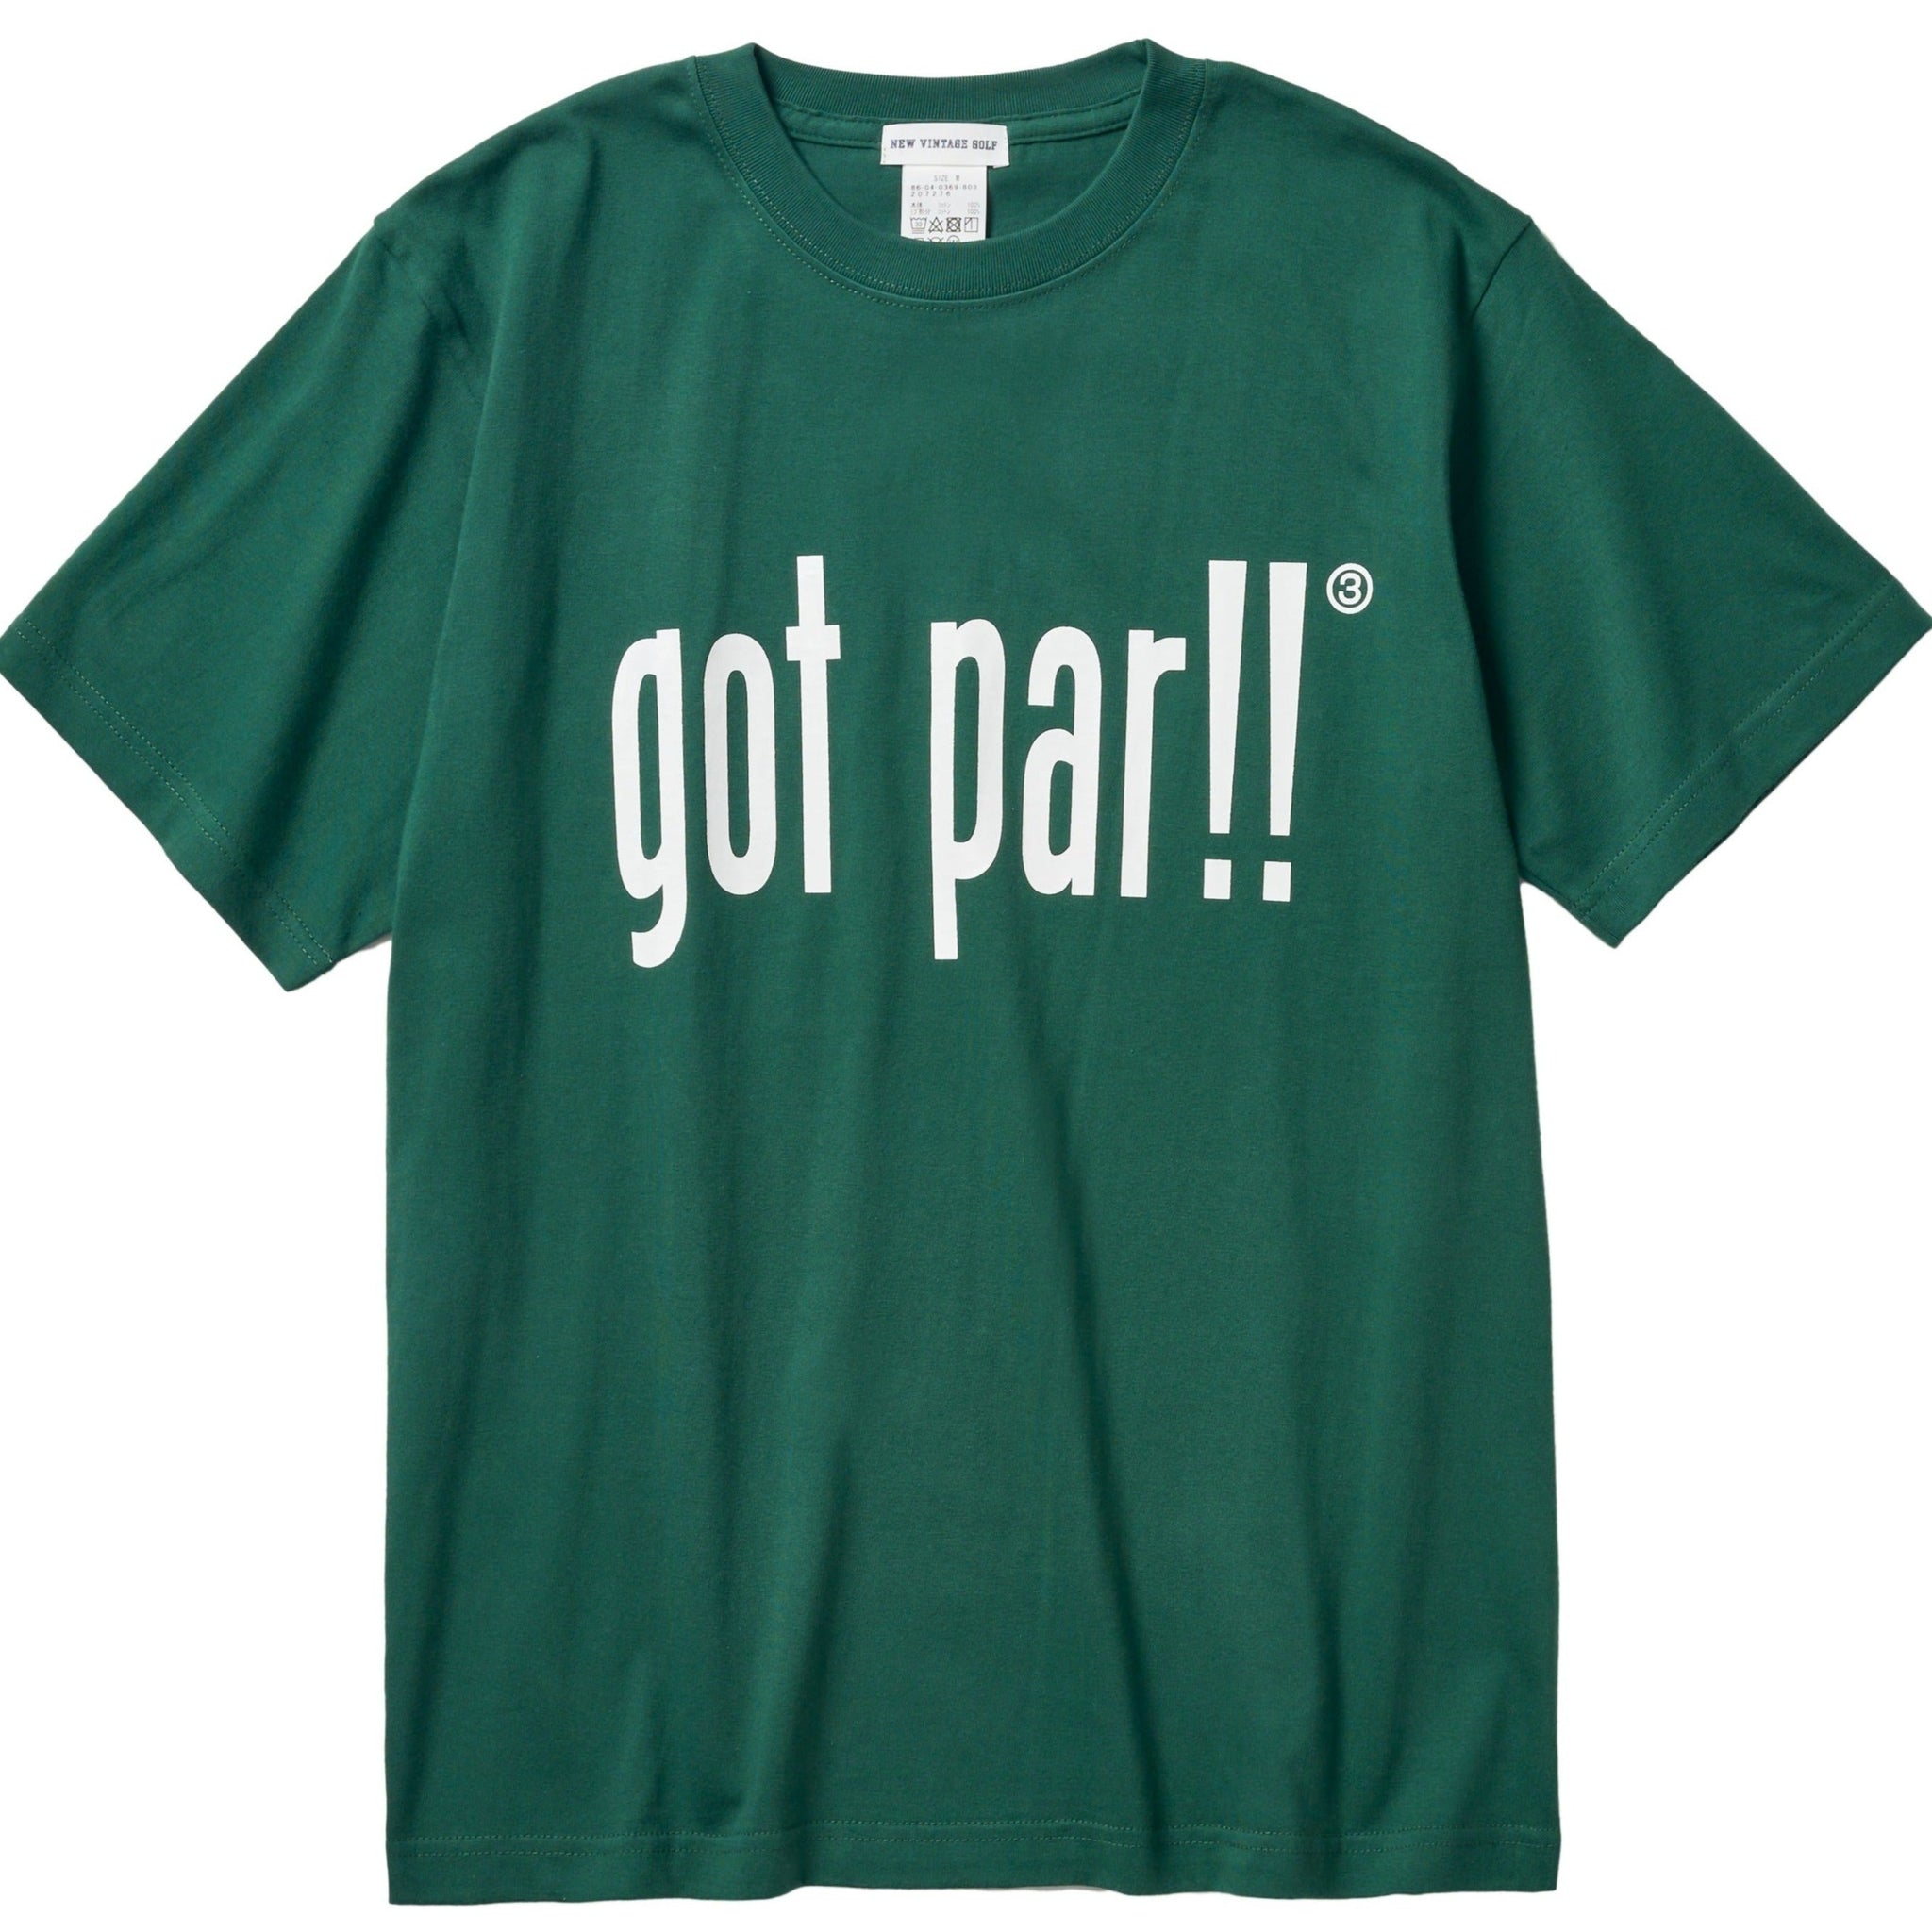 got par!! T-shirt